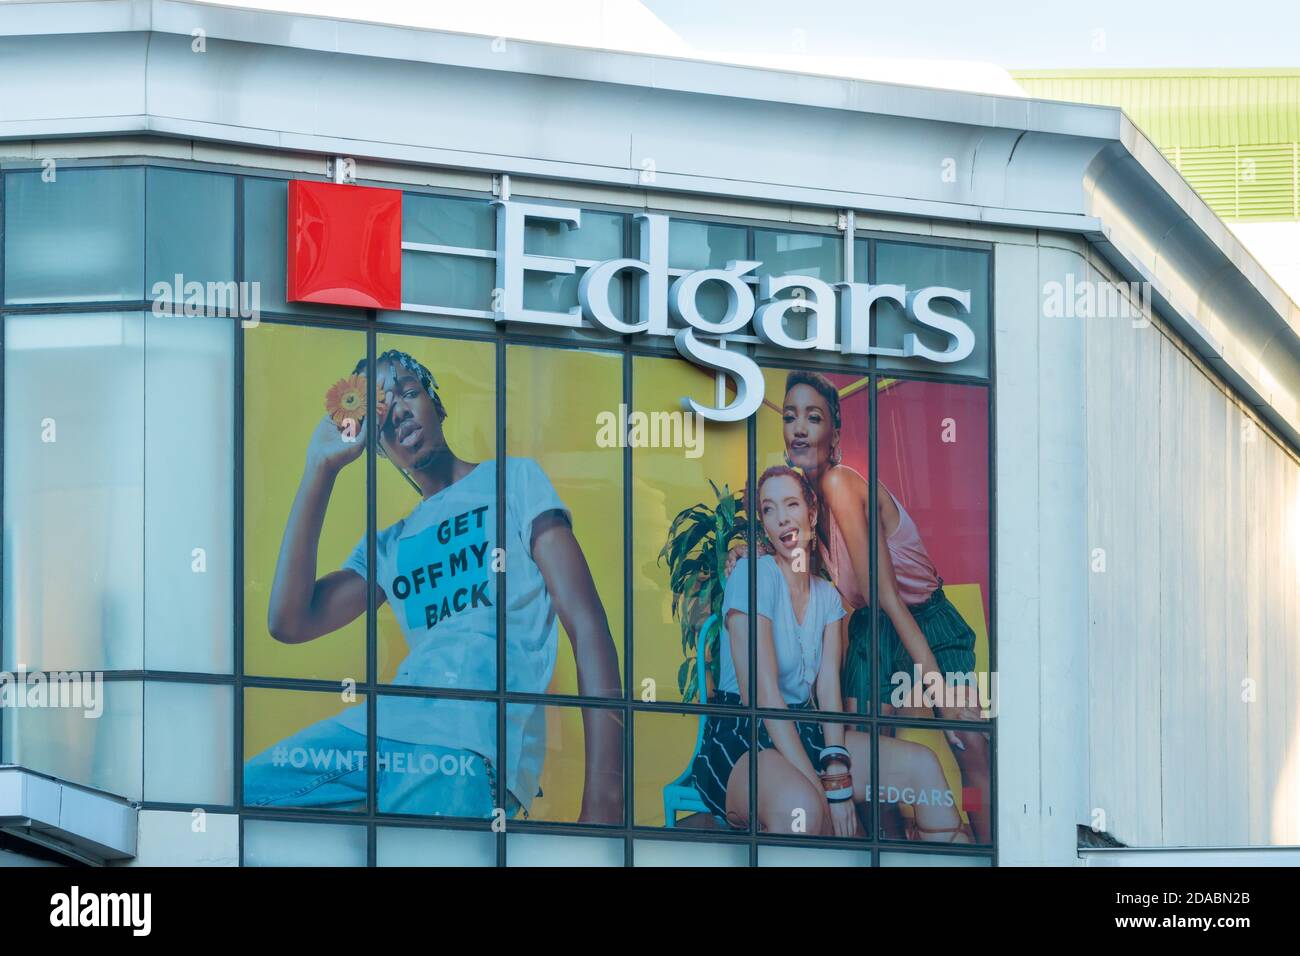 Publicité sur panneau publicitaire Edgars sur un mur d'un magasin de détail En Afrique du Sud montrant leur marque et leur logo Banque D'Images